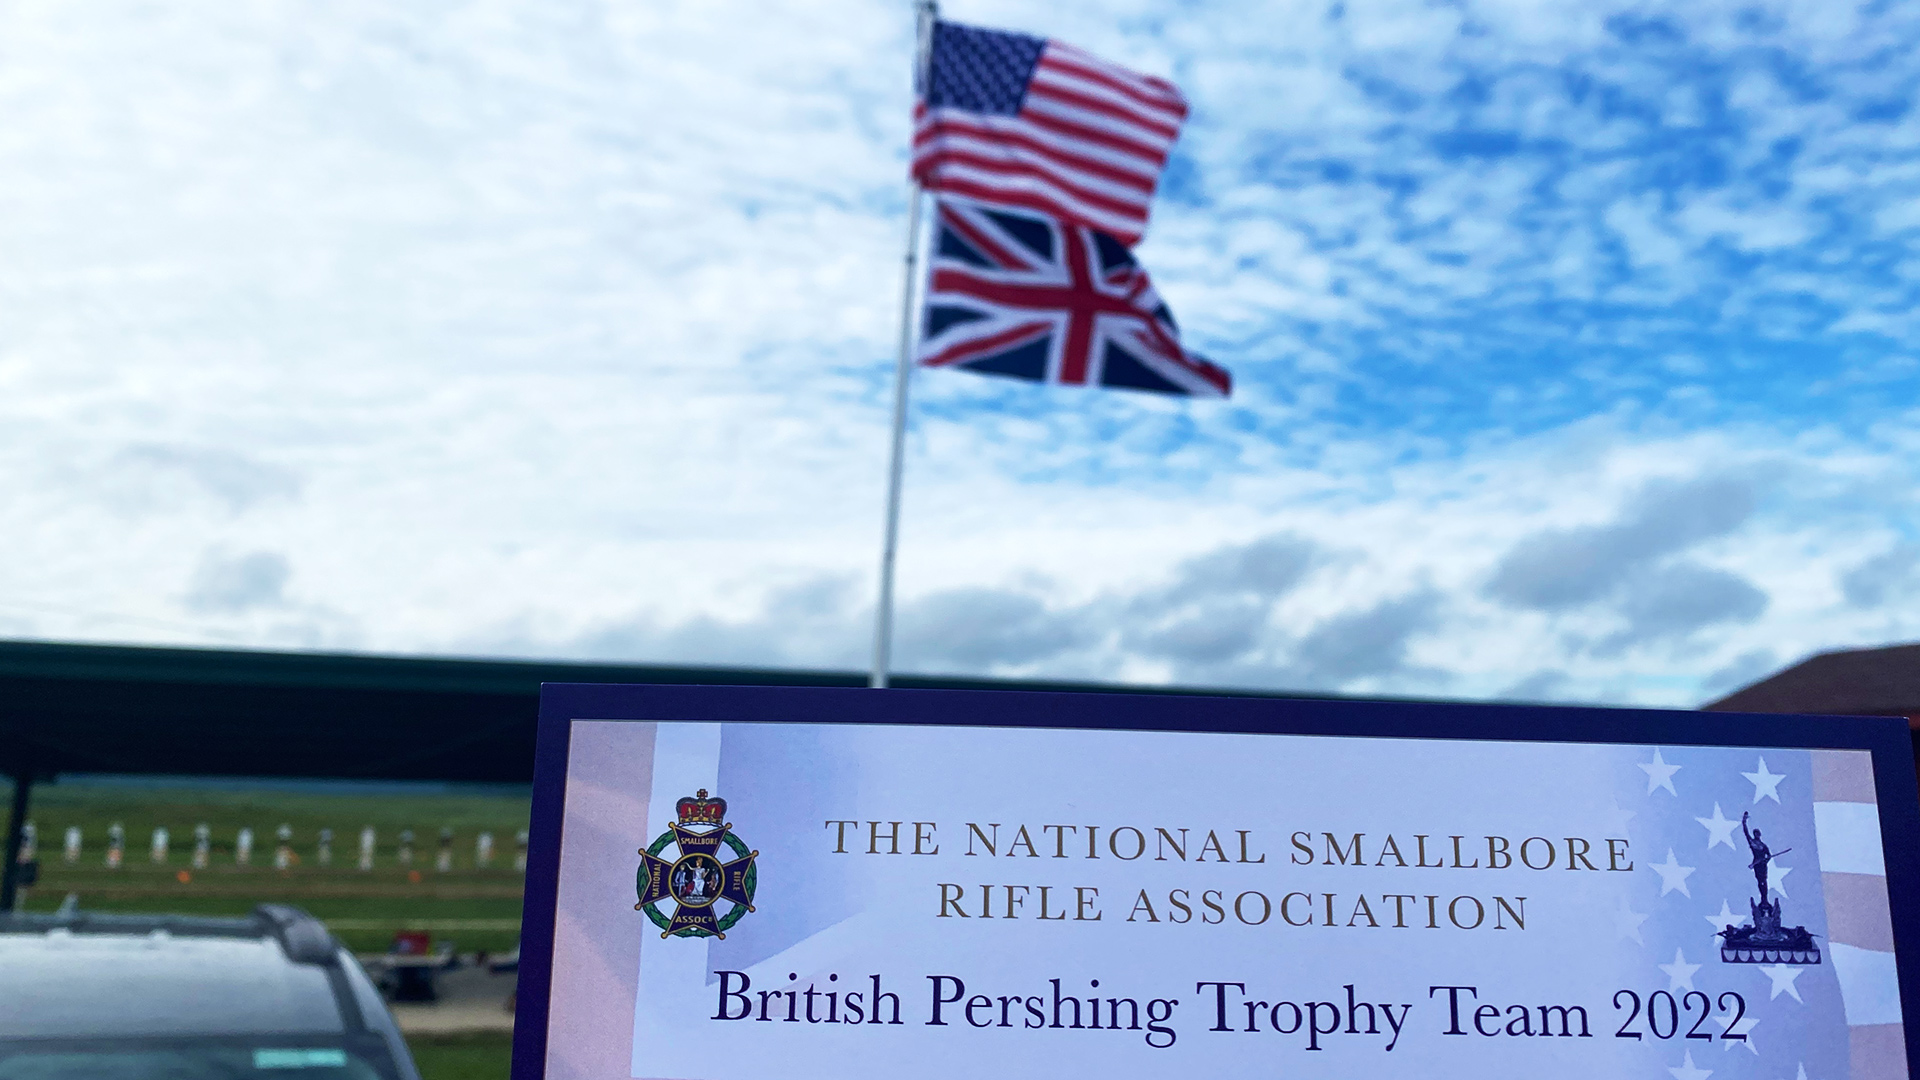 British Pershing Trophy Team at Camp Atterbury